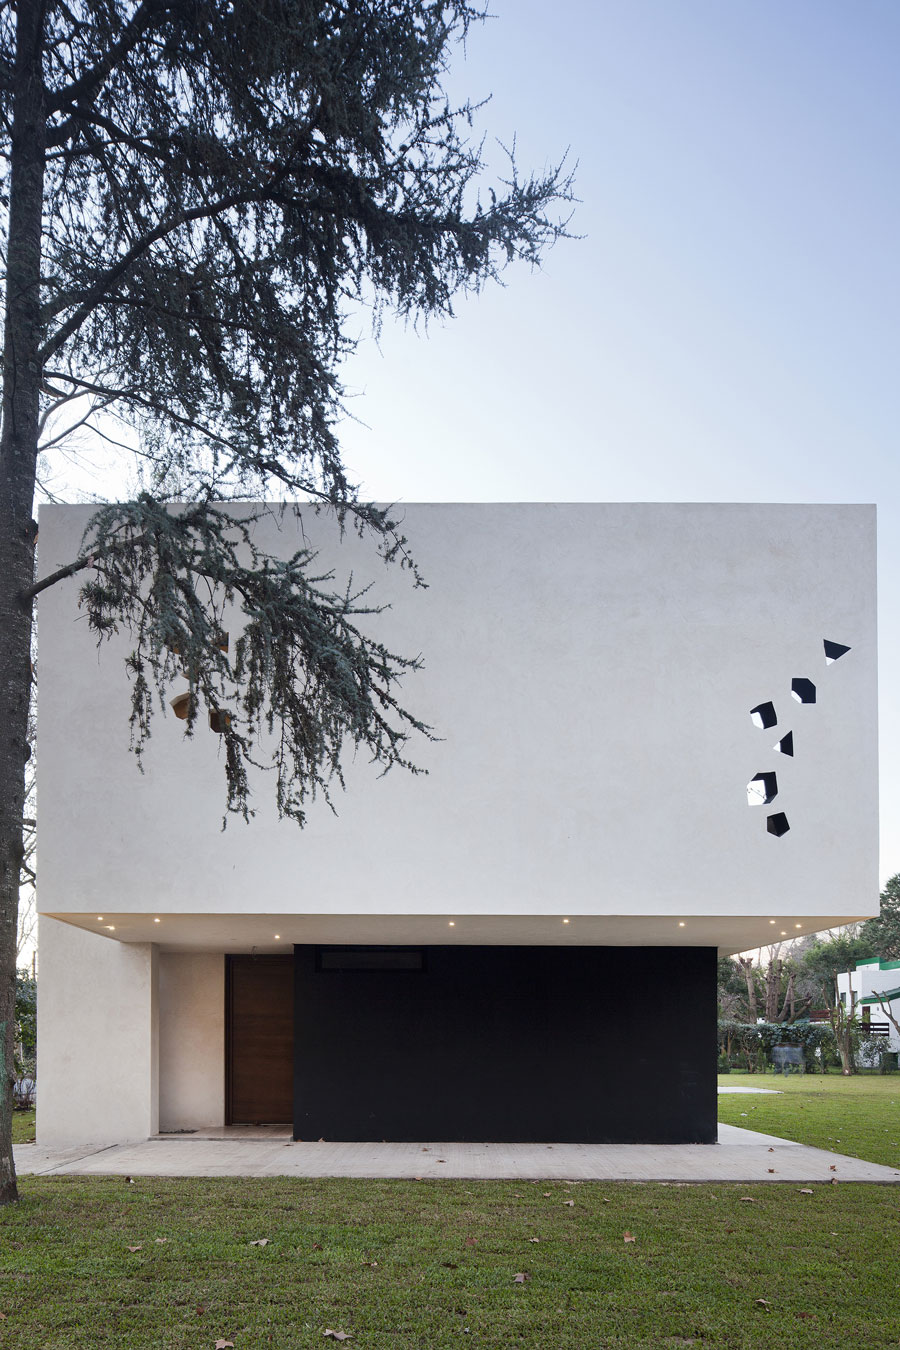 Геометрические фантазии дизайна загородного дома blltt house от архитектора enrique barberis, буэнос-айрес